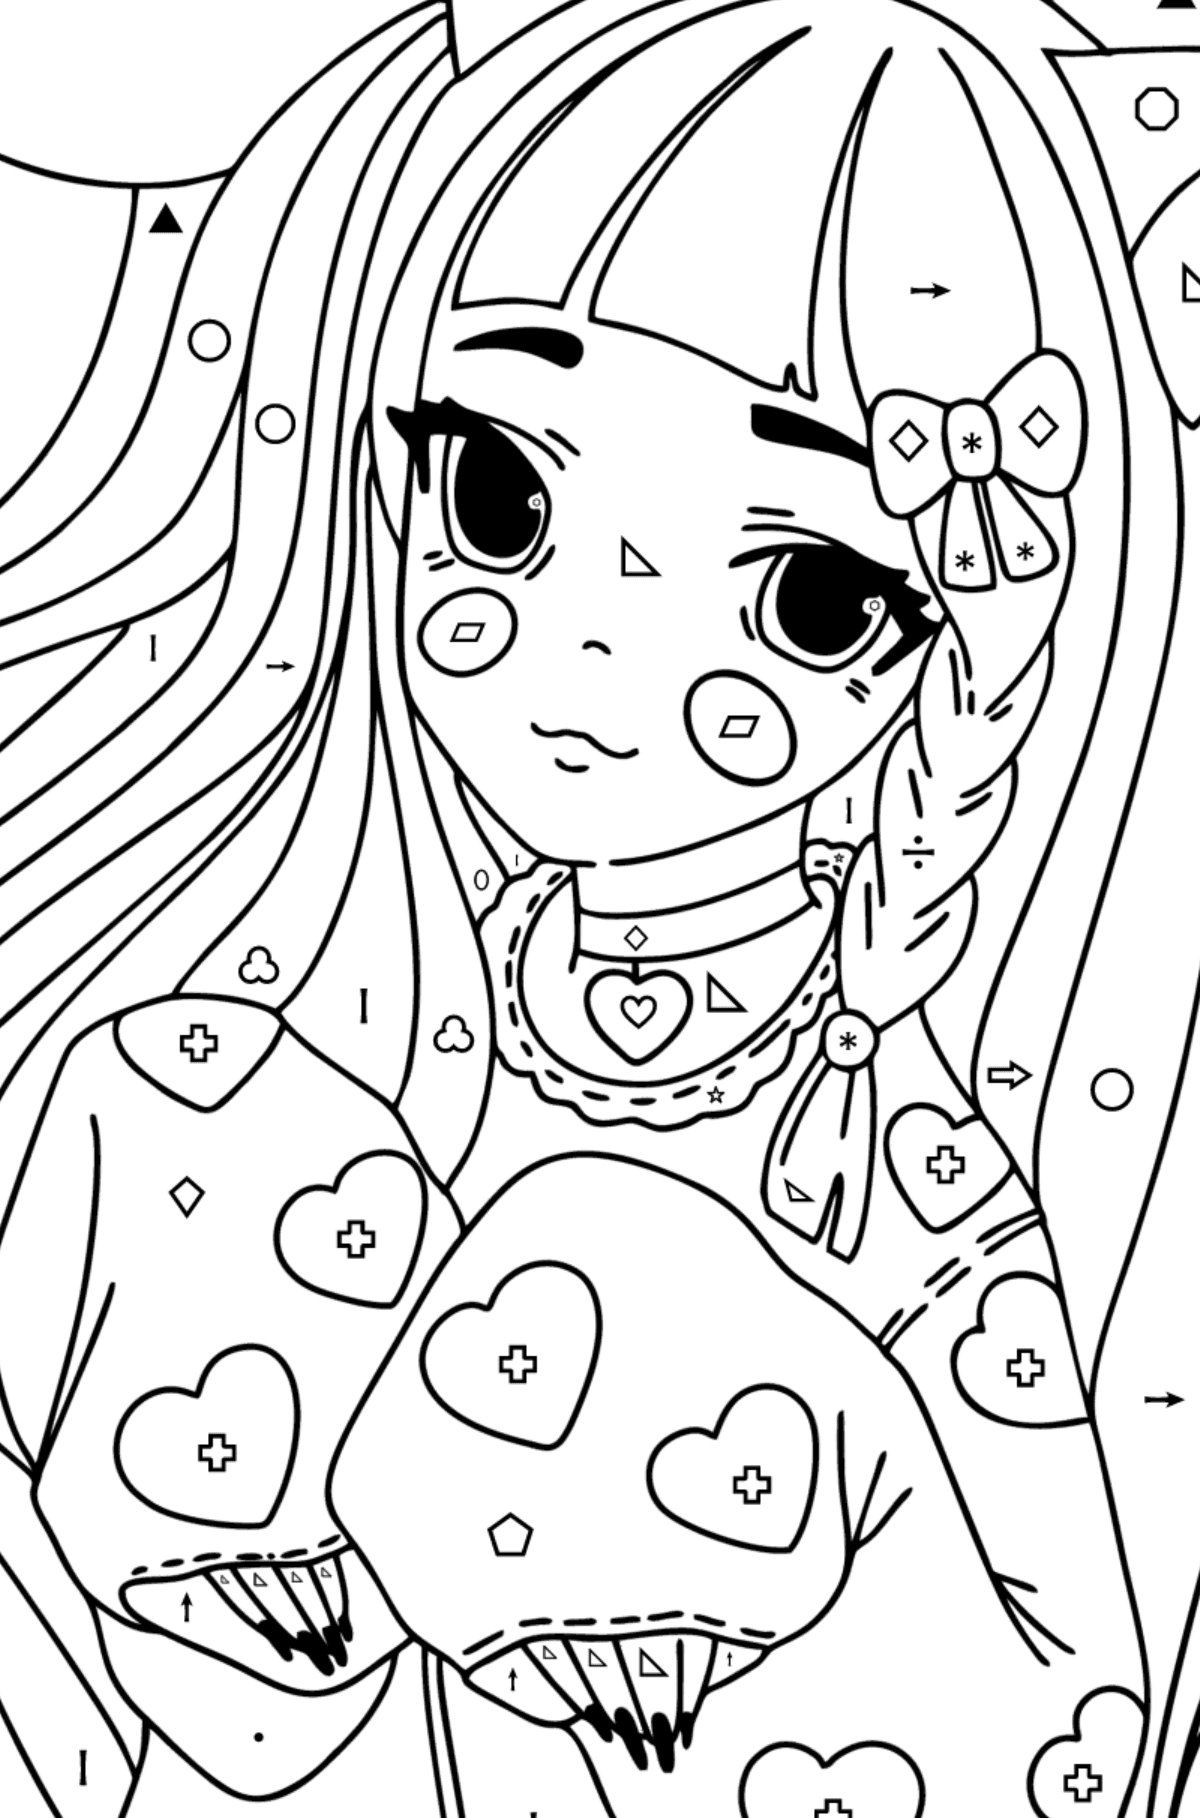 Fată anime cu urechi și labe desen de colorat - Desen de colorat după Simbol și Forme Geometrice pentru copii